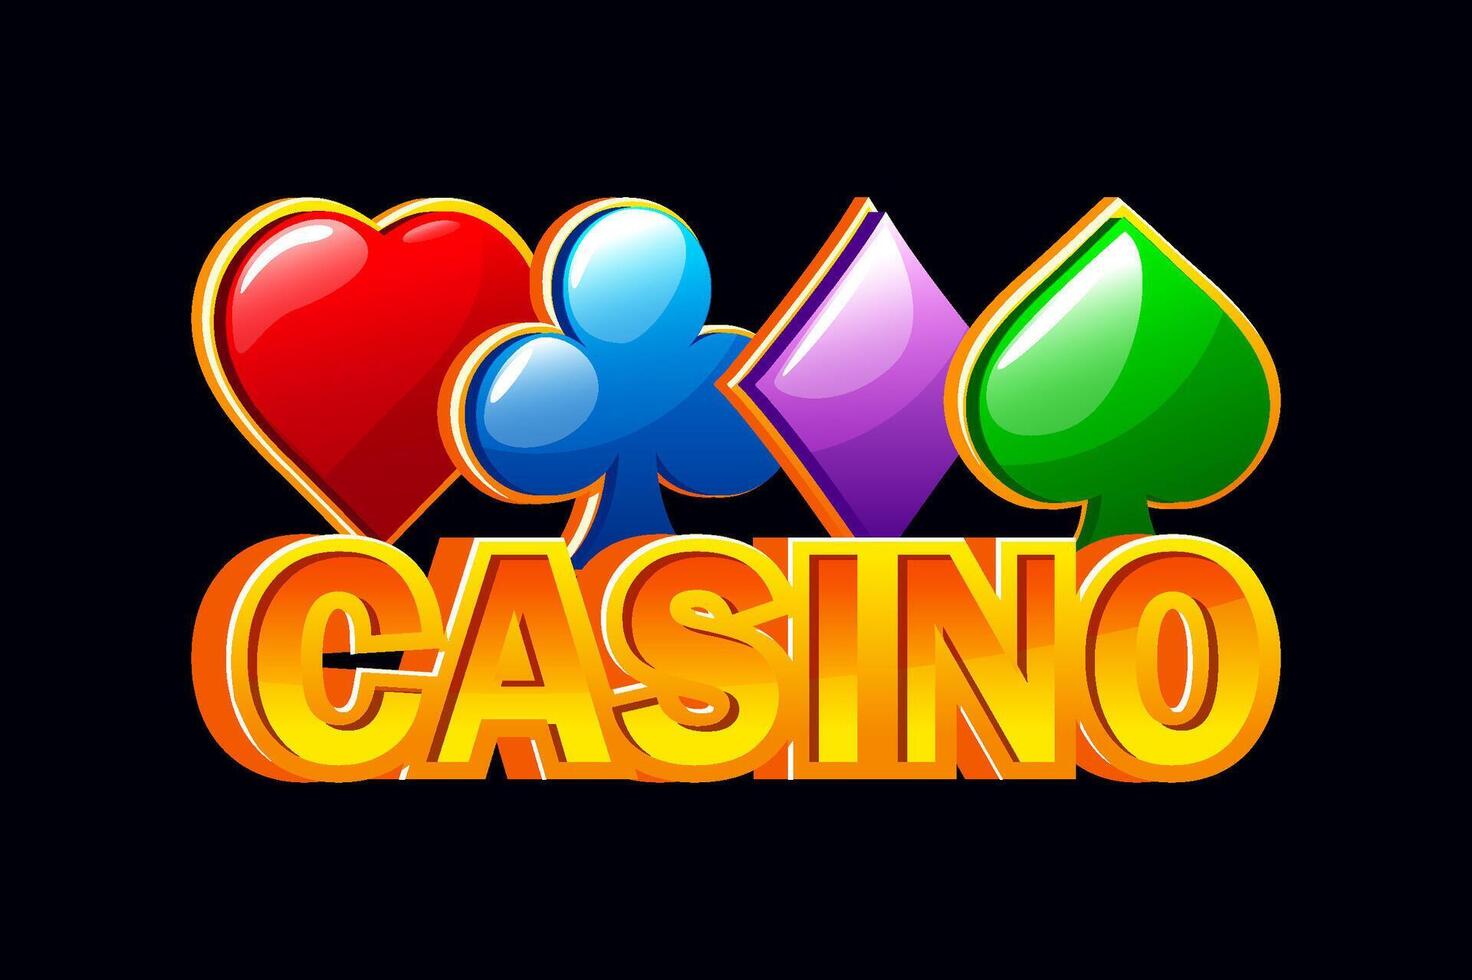 juego texto casino y cuatro póker simbolos corazón, pala ,club y diamante. vector